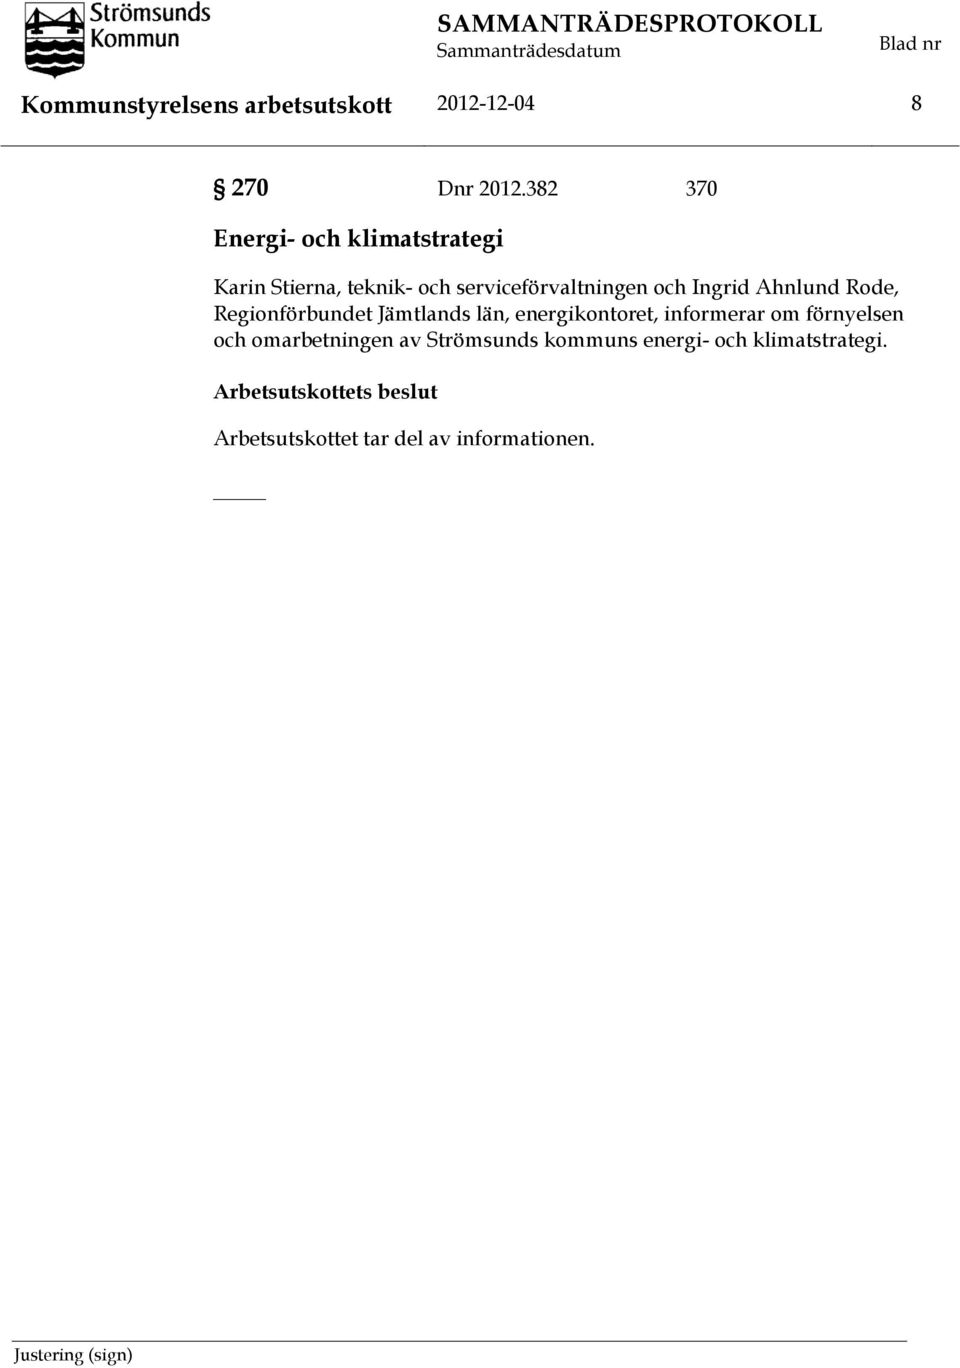 Ingrid Ahnlund Rode, Regionförbundet Jämtlands län, energikontoret, informerar om förnyelsen